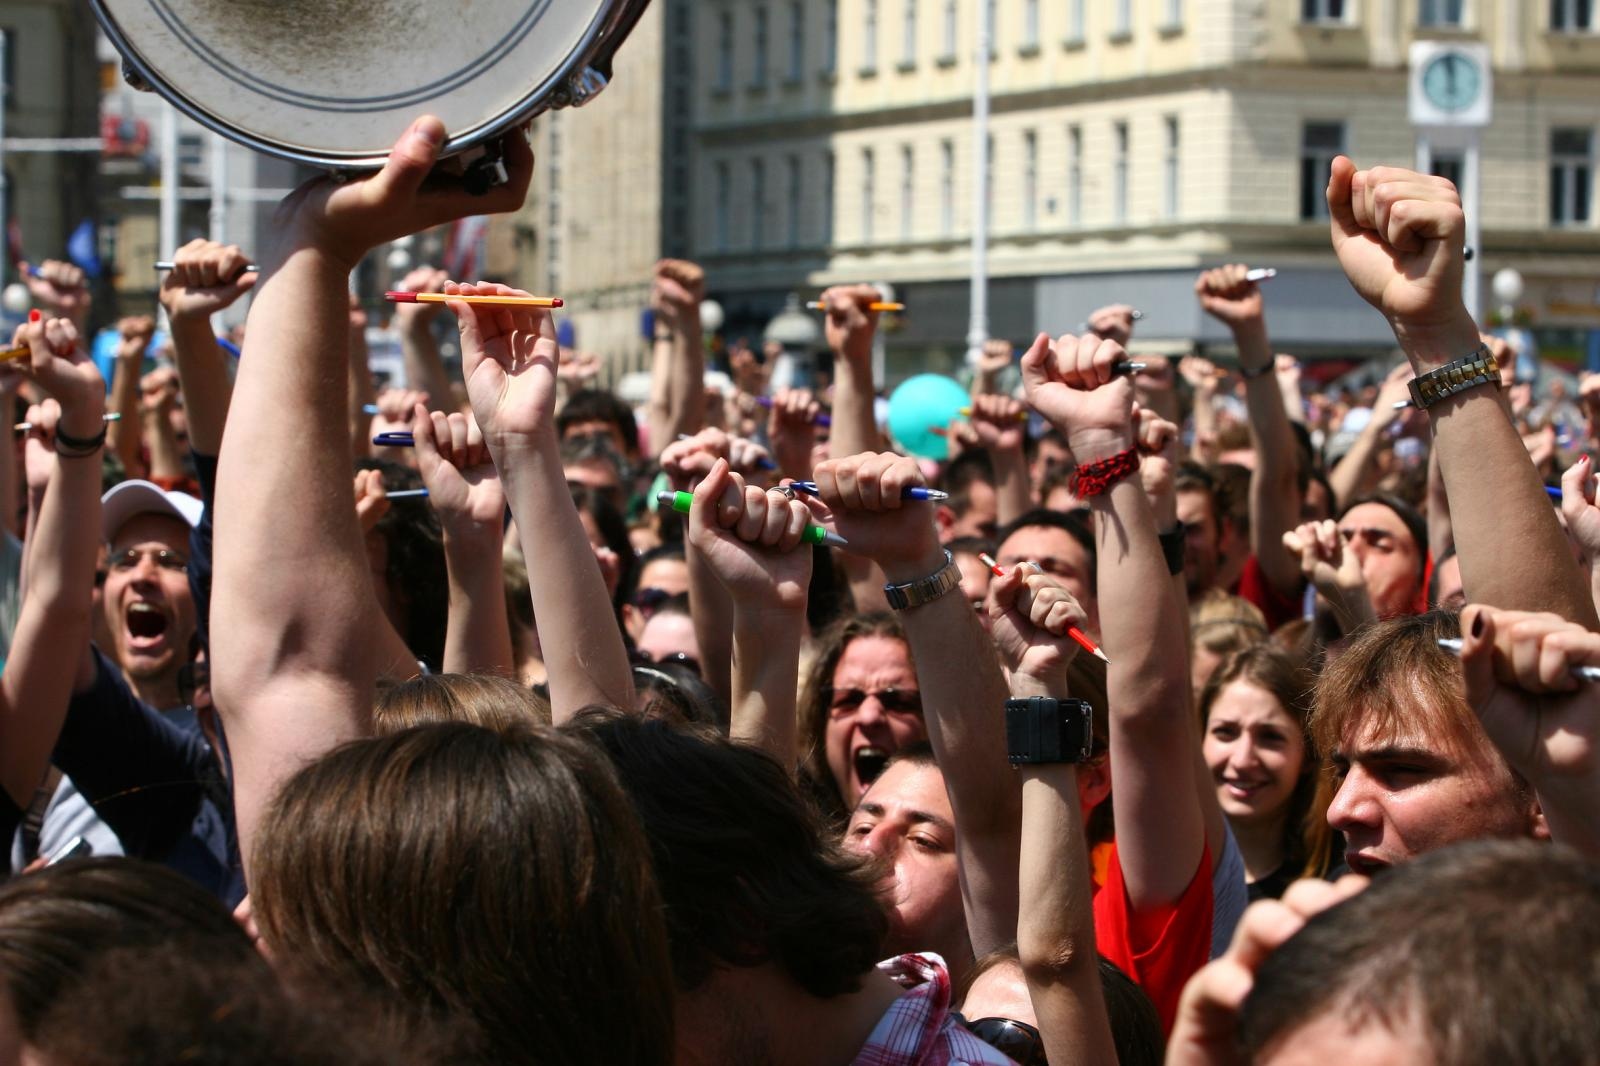 Tri dana kasnije održan je veliki prosvjed u Zagrebu protiv uvođenja plaćanja školarina